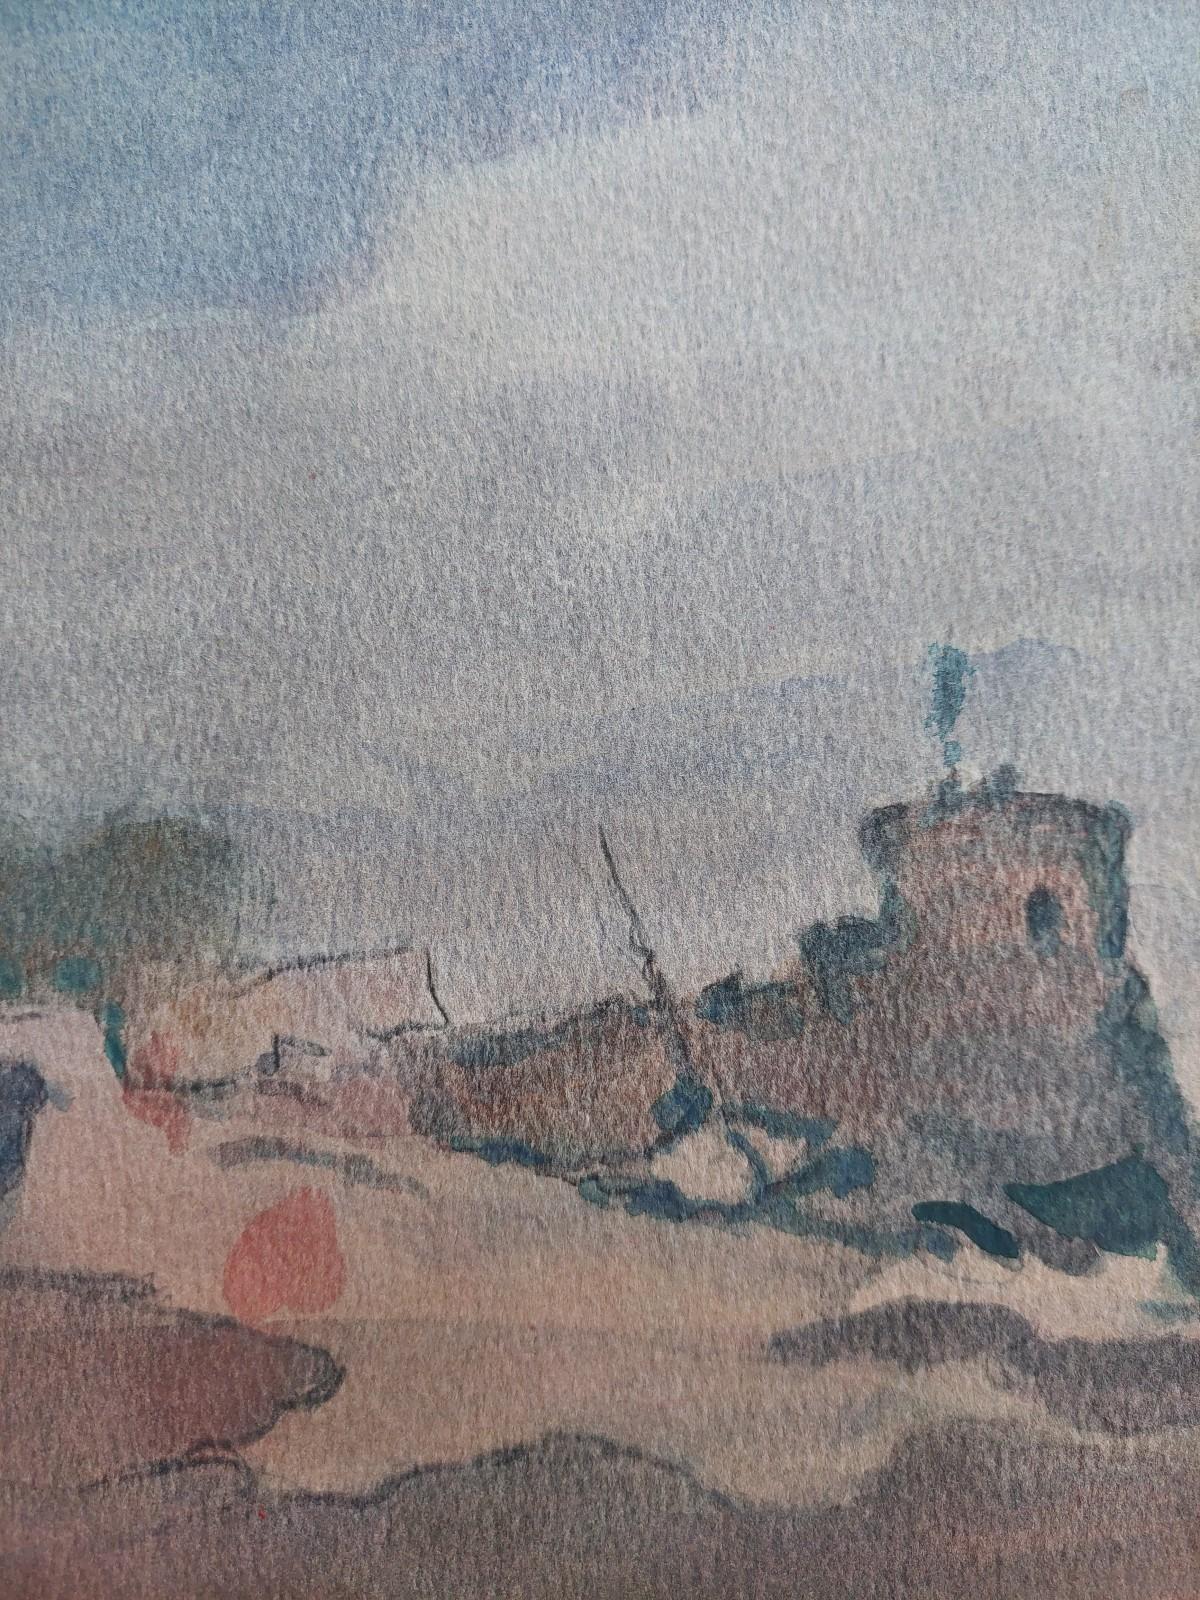 Français Peinture cubiste française moderniste représentant des bateaux de pêche par la fortification côtière en vente